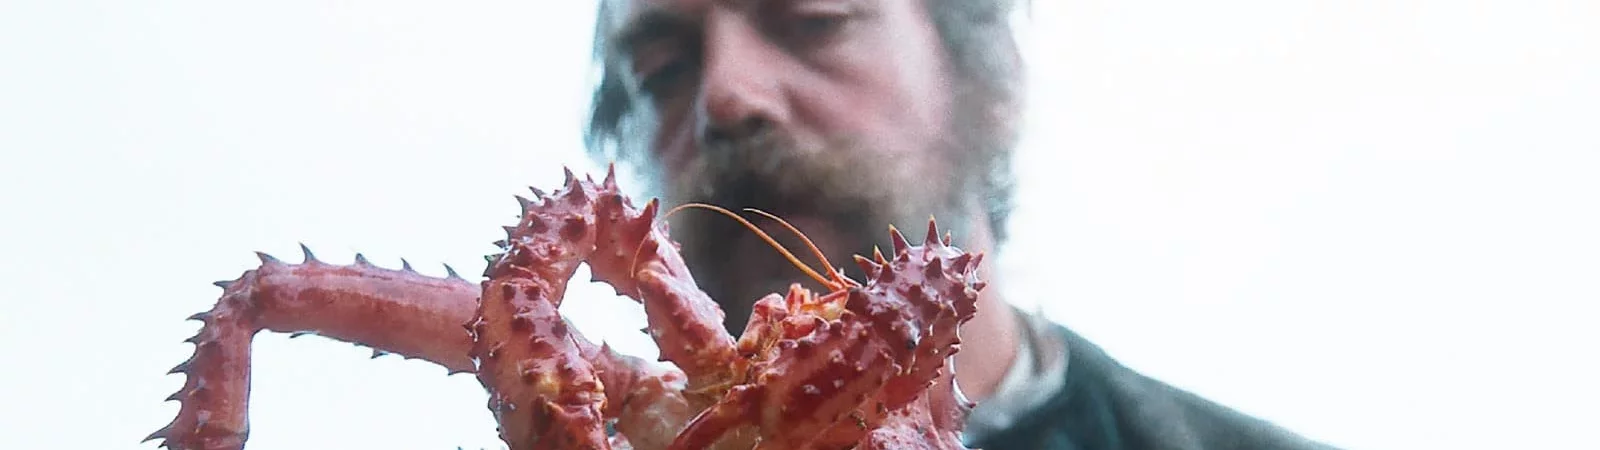 Photo du film : La Légende du roi crabe